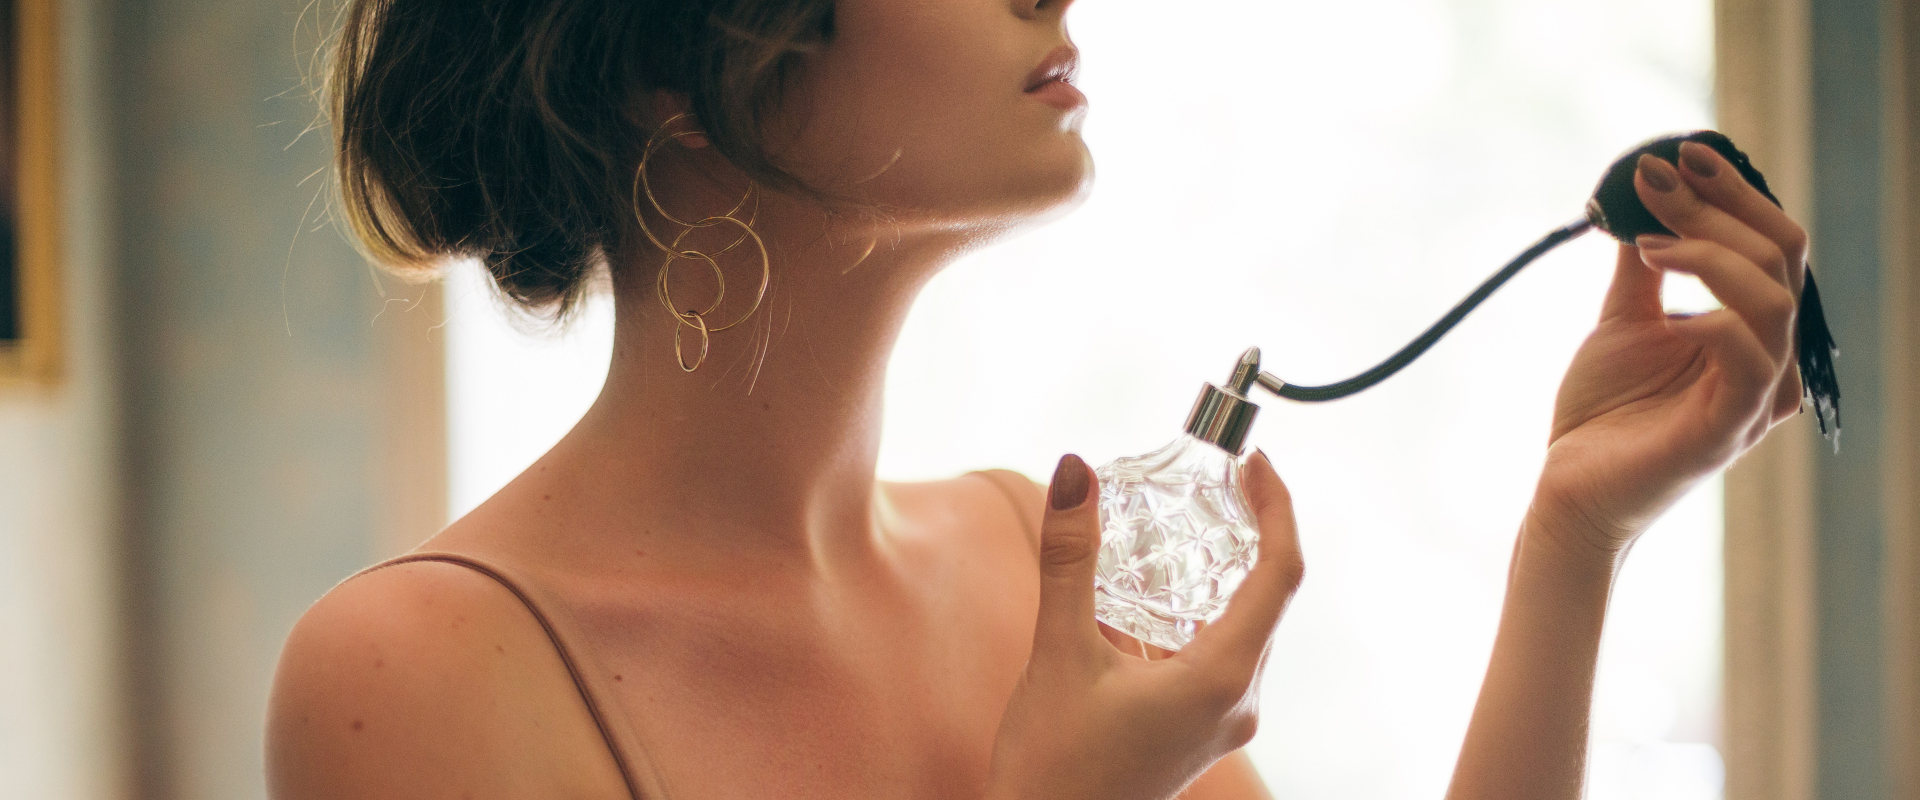 Parfümök világmárkák által inspirálva